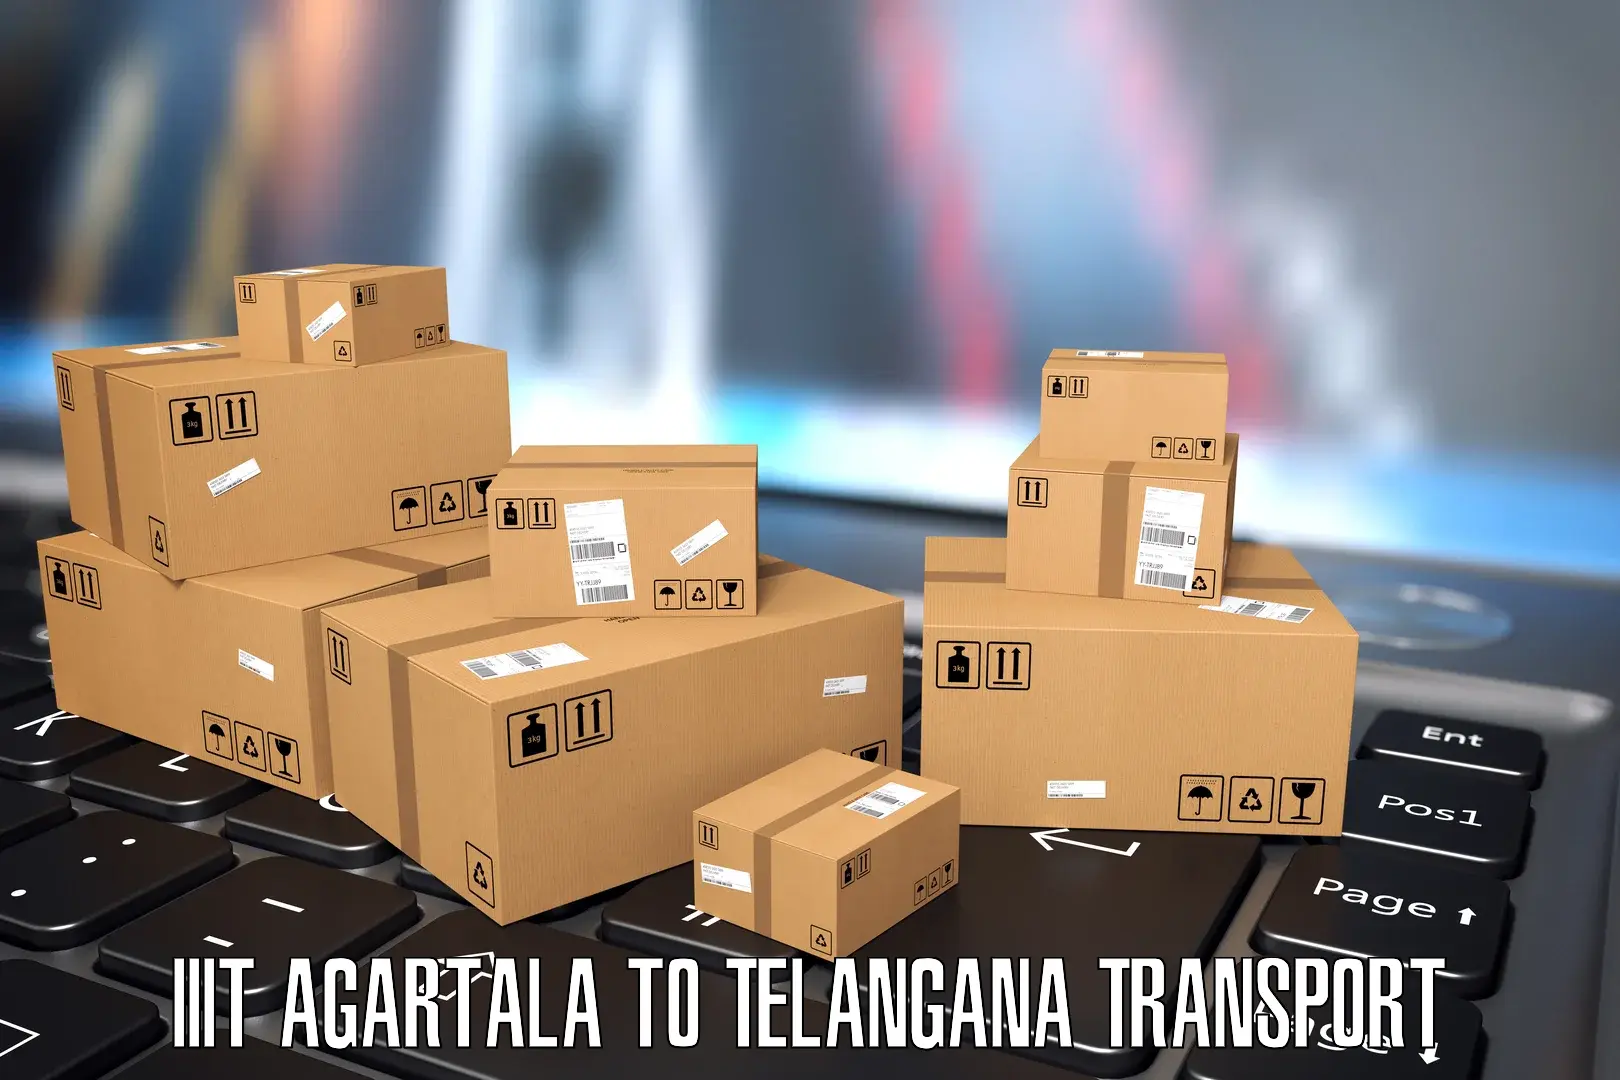 Truck transport companies in India IIIT Agartala to Gangadhara